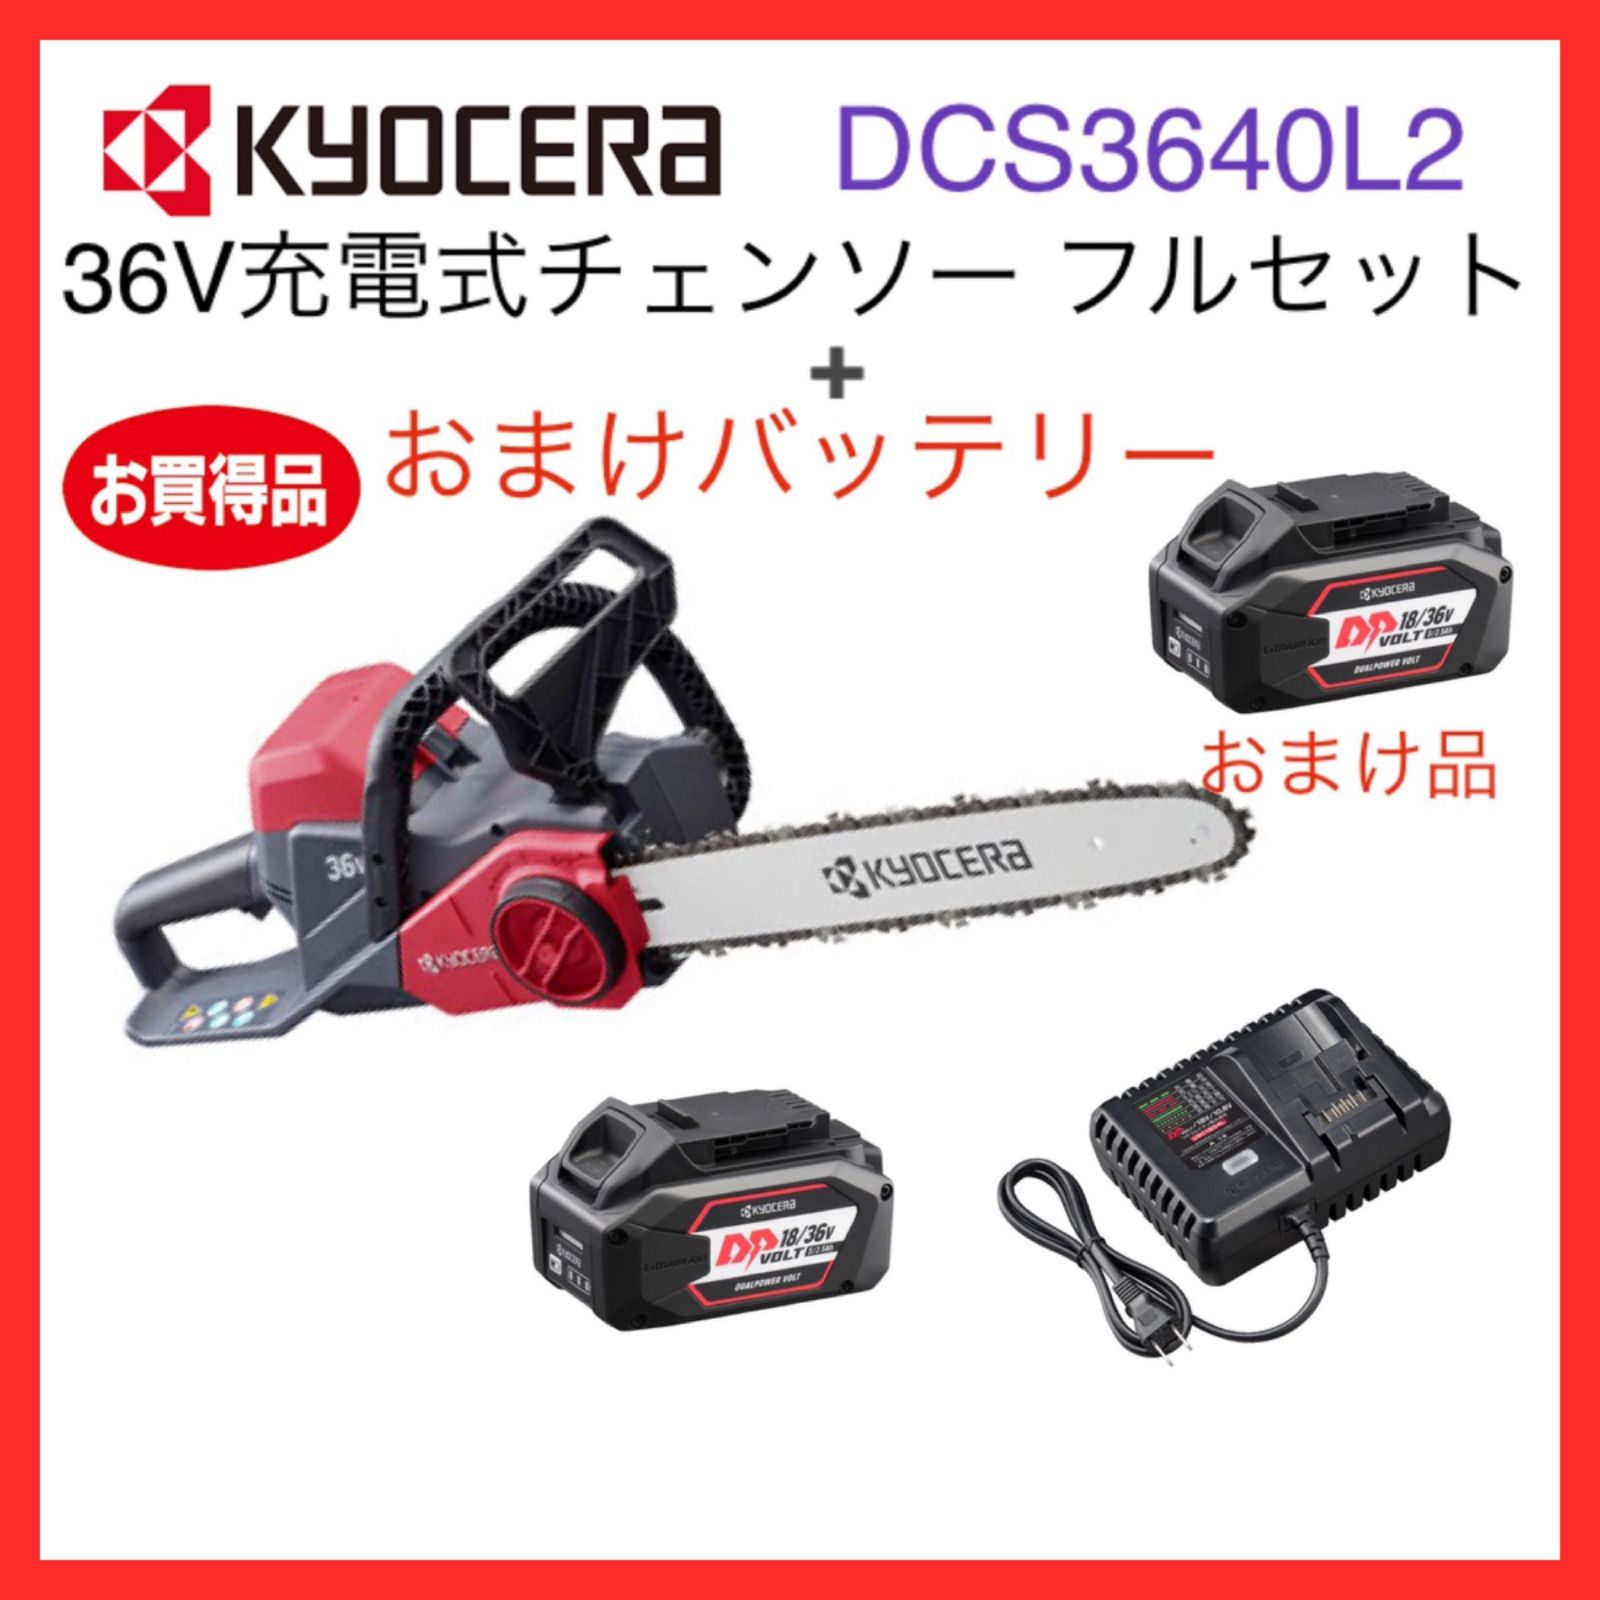 京セラ 36V 充電式刈払機 DK3600L2(661500A) Dualpower Voltデュアルパワーボルト - 1